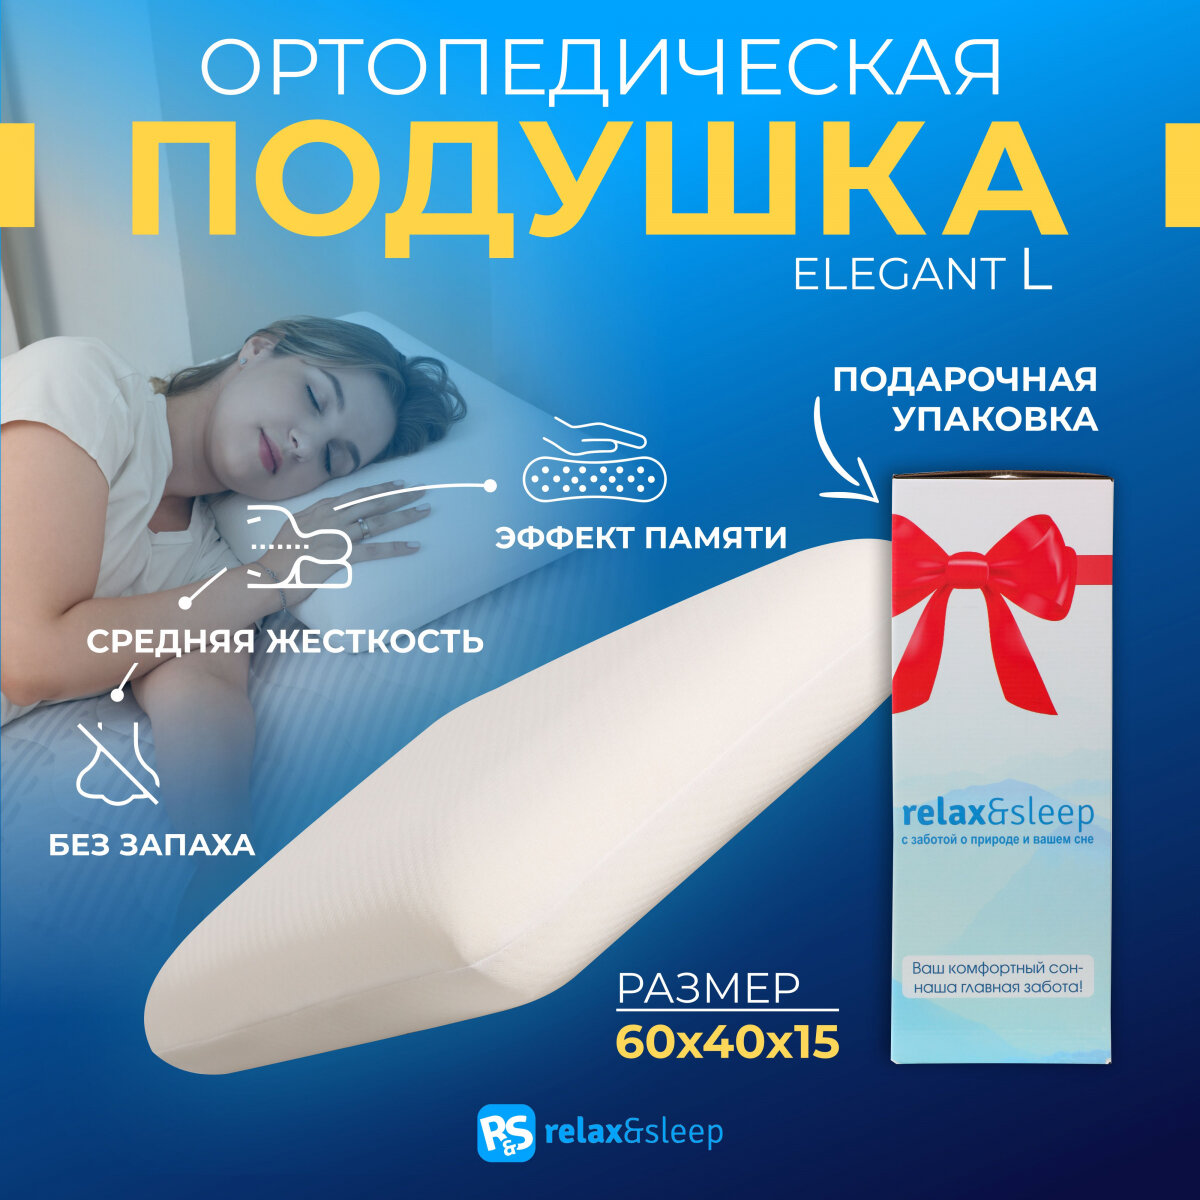 Ортопедическая, анатомическая подушка для сна с эффектом памяти Relax&Sleep 60x40x15см